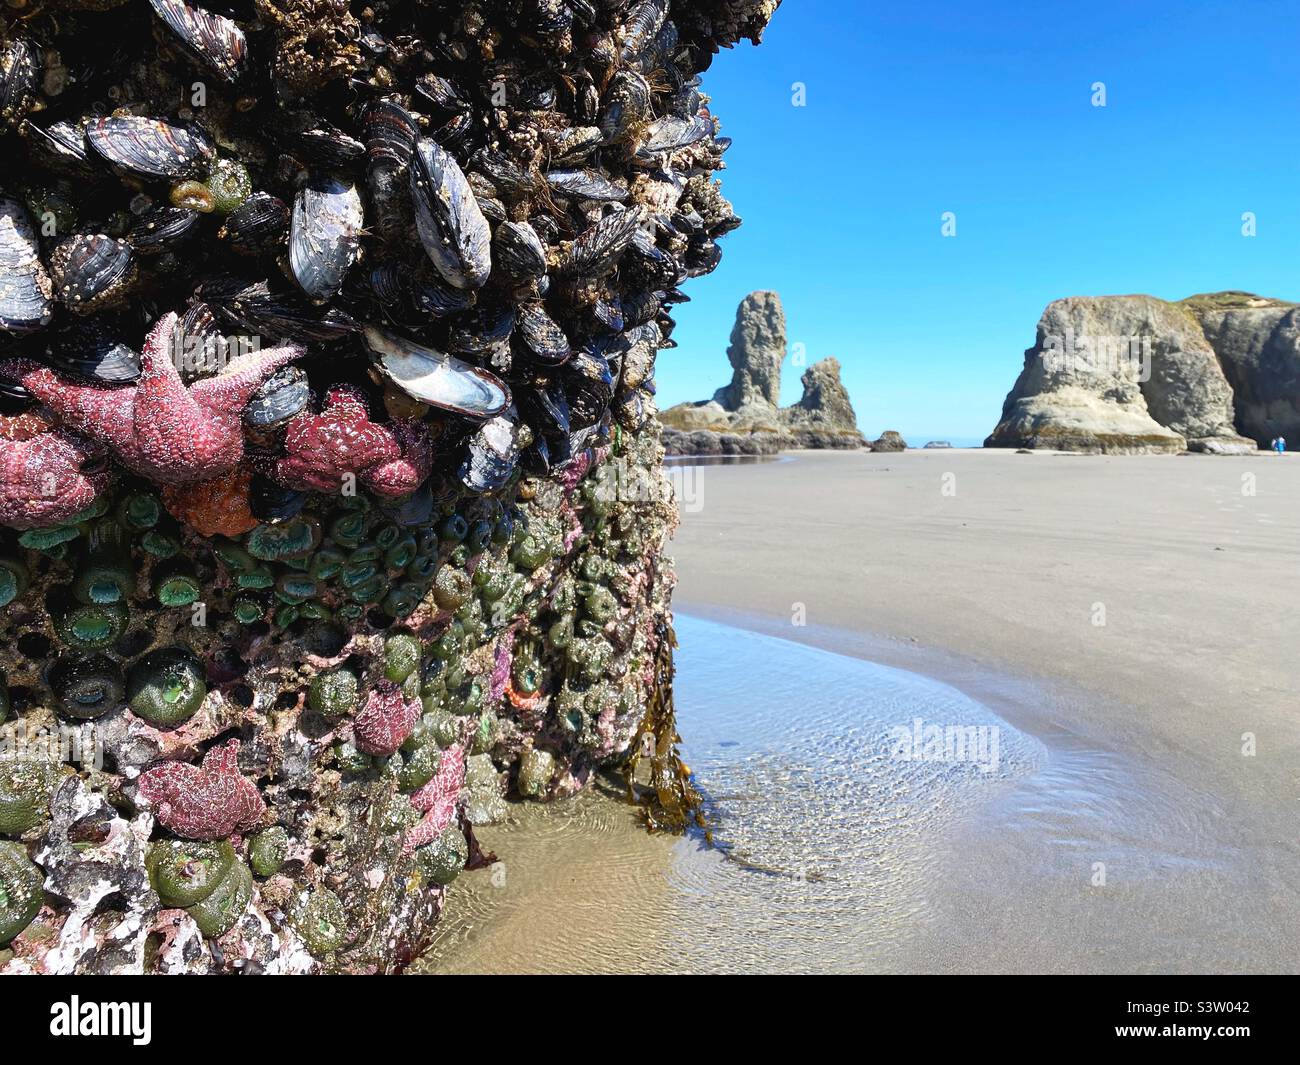 Seesterne, Muscheln und Anemone Klammern sich bei Ebbe am Face Rock Beach in Bandon, Oregon, USA, an einem Meeresgestein. Stockfoto